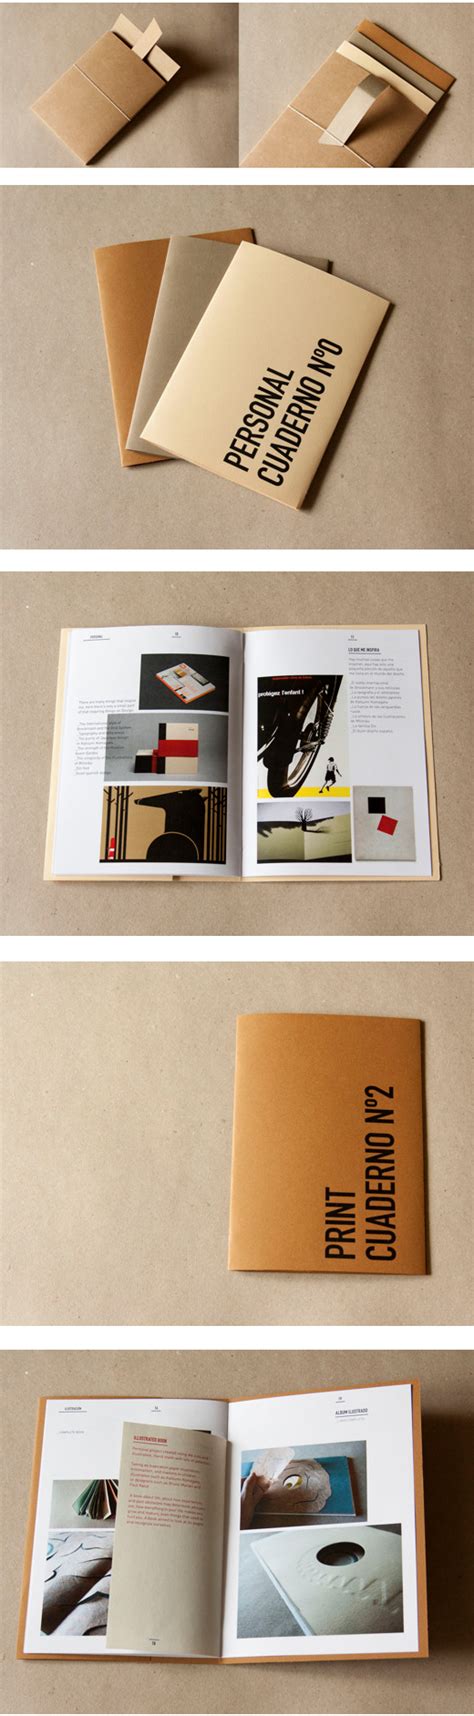 5 Most Impressive Graphic Design Print Portfolios